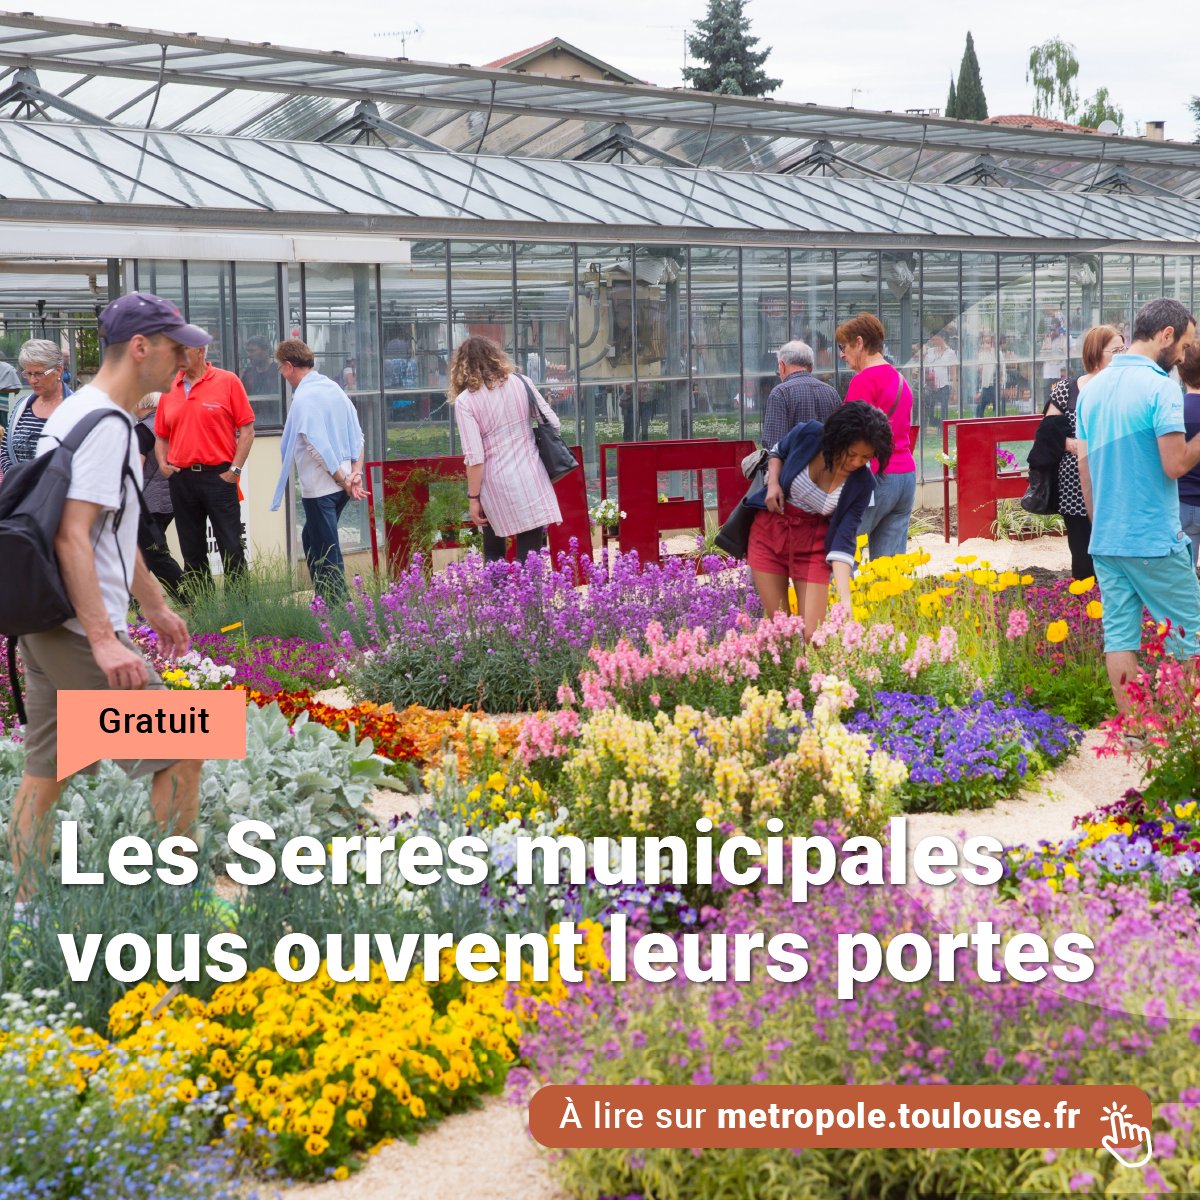 Les 4 et 5 mai, rendez-vous aux Serres municipales de Toulouse pour les journées portes ouvertes gratuites ! Découvrez toute la richesse des collections végétales de la ville. 🔗 bit.ly/4d9lS5E